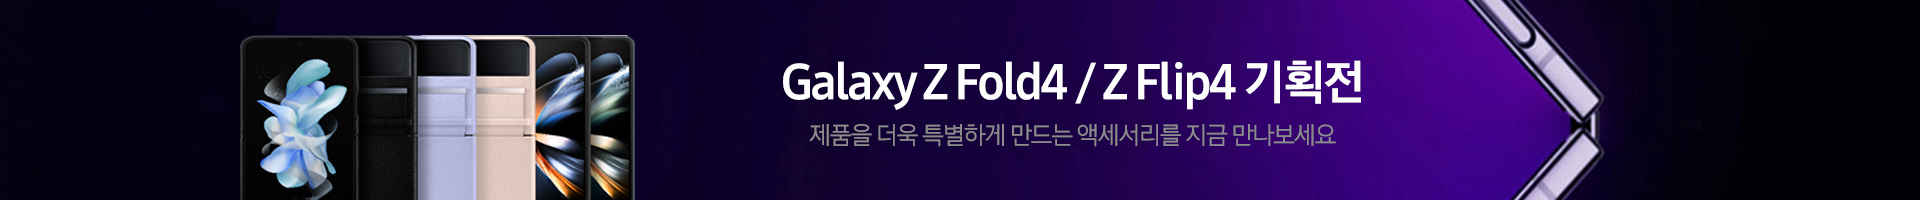 Z Fold 4 / Z Flip4 기획전 배너